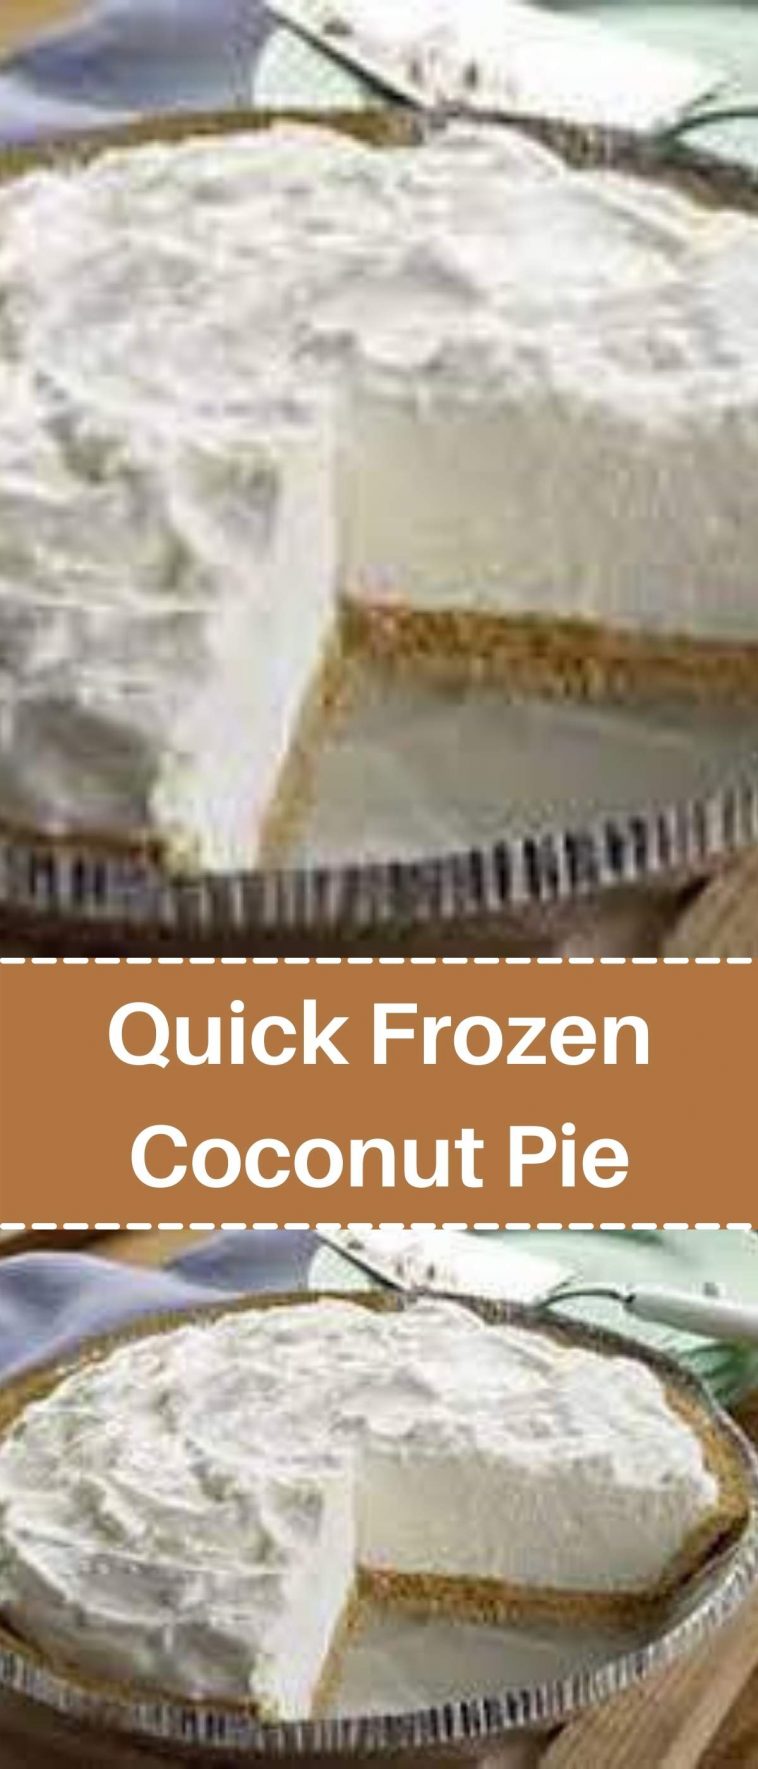 Quick Frozen Coconut Pie